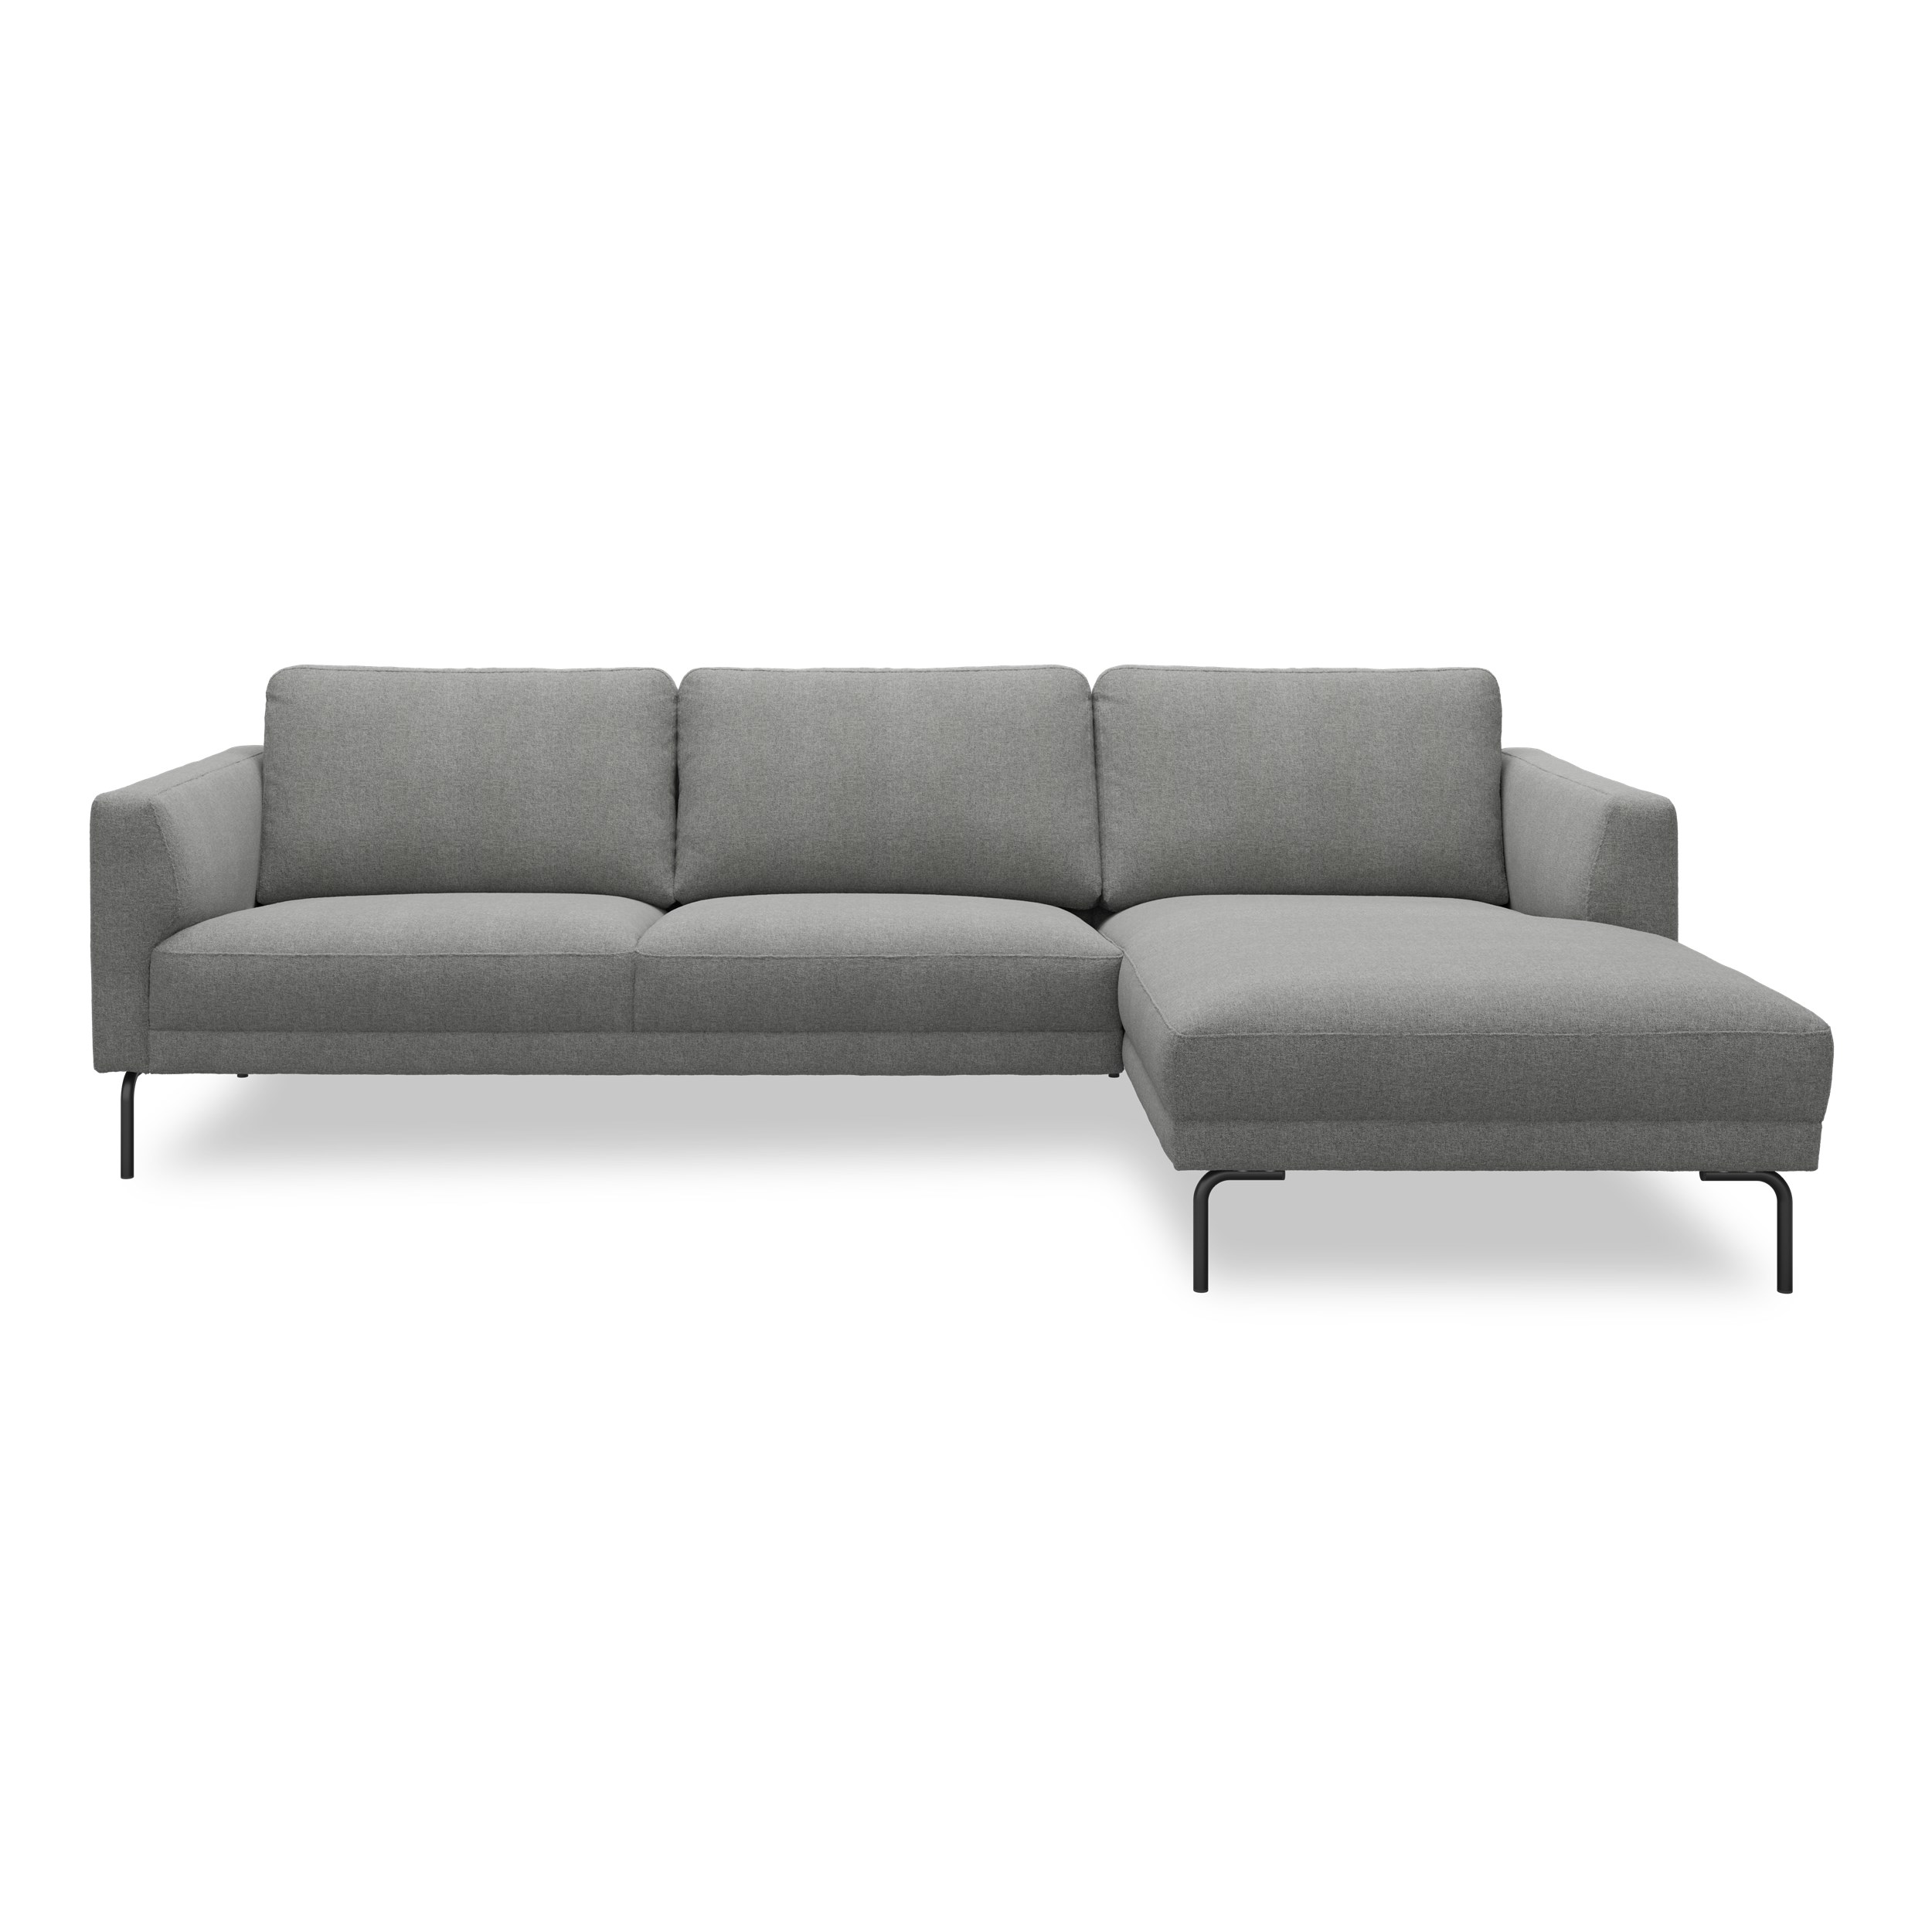 Springfield højrevendt sofa med chaiselong 